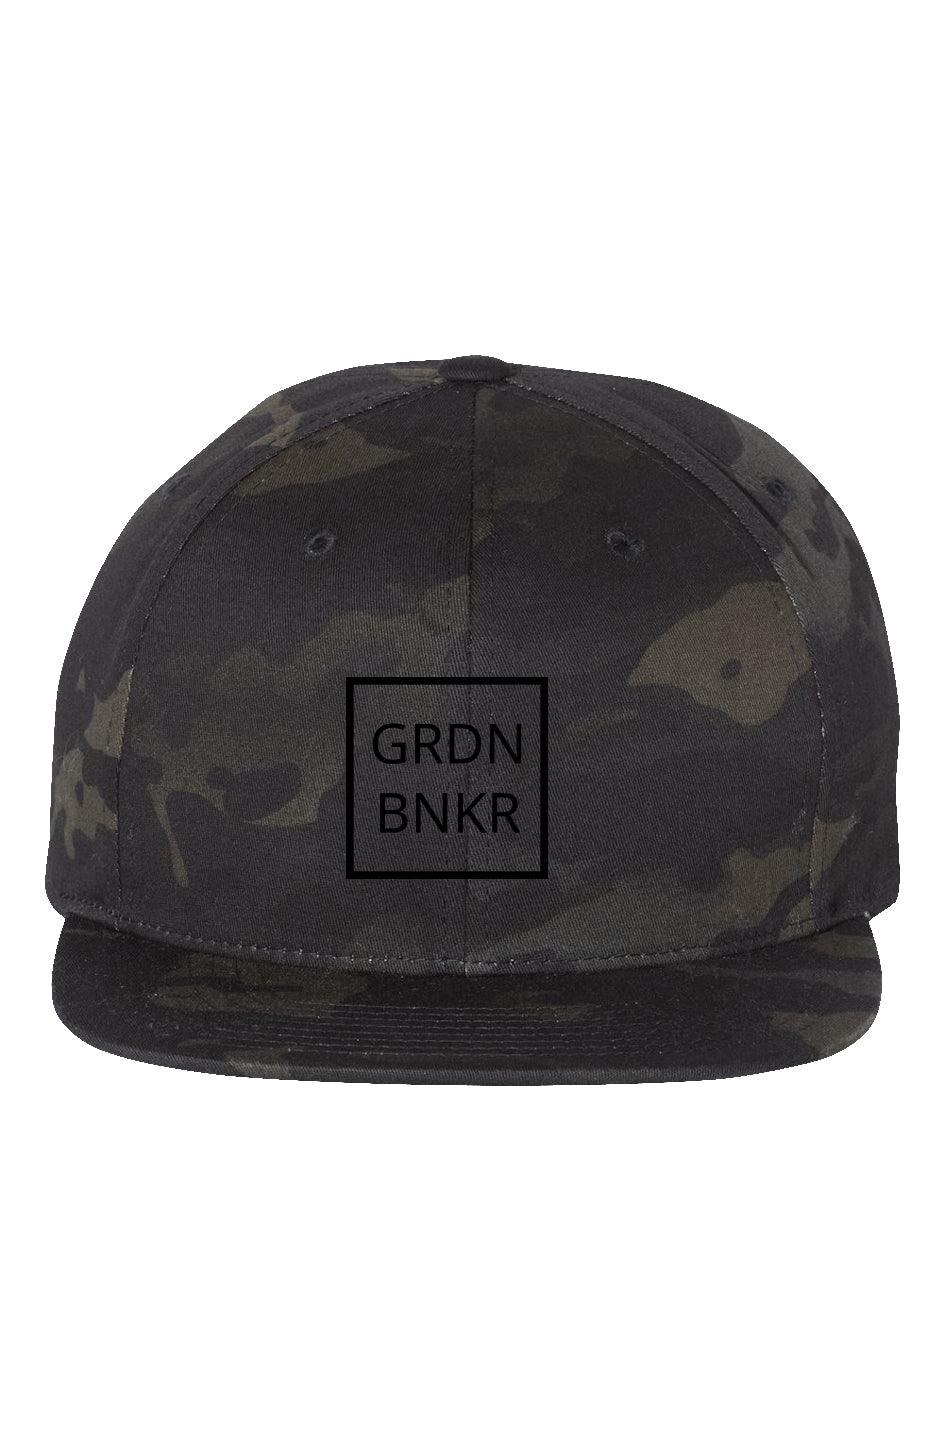 GRDN BNKR Multicam Black Premium Snapback